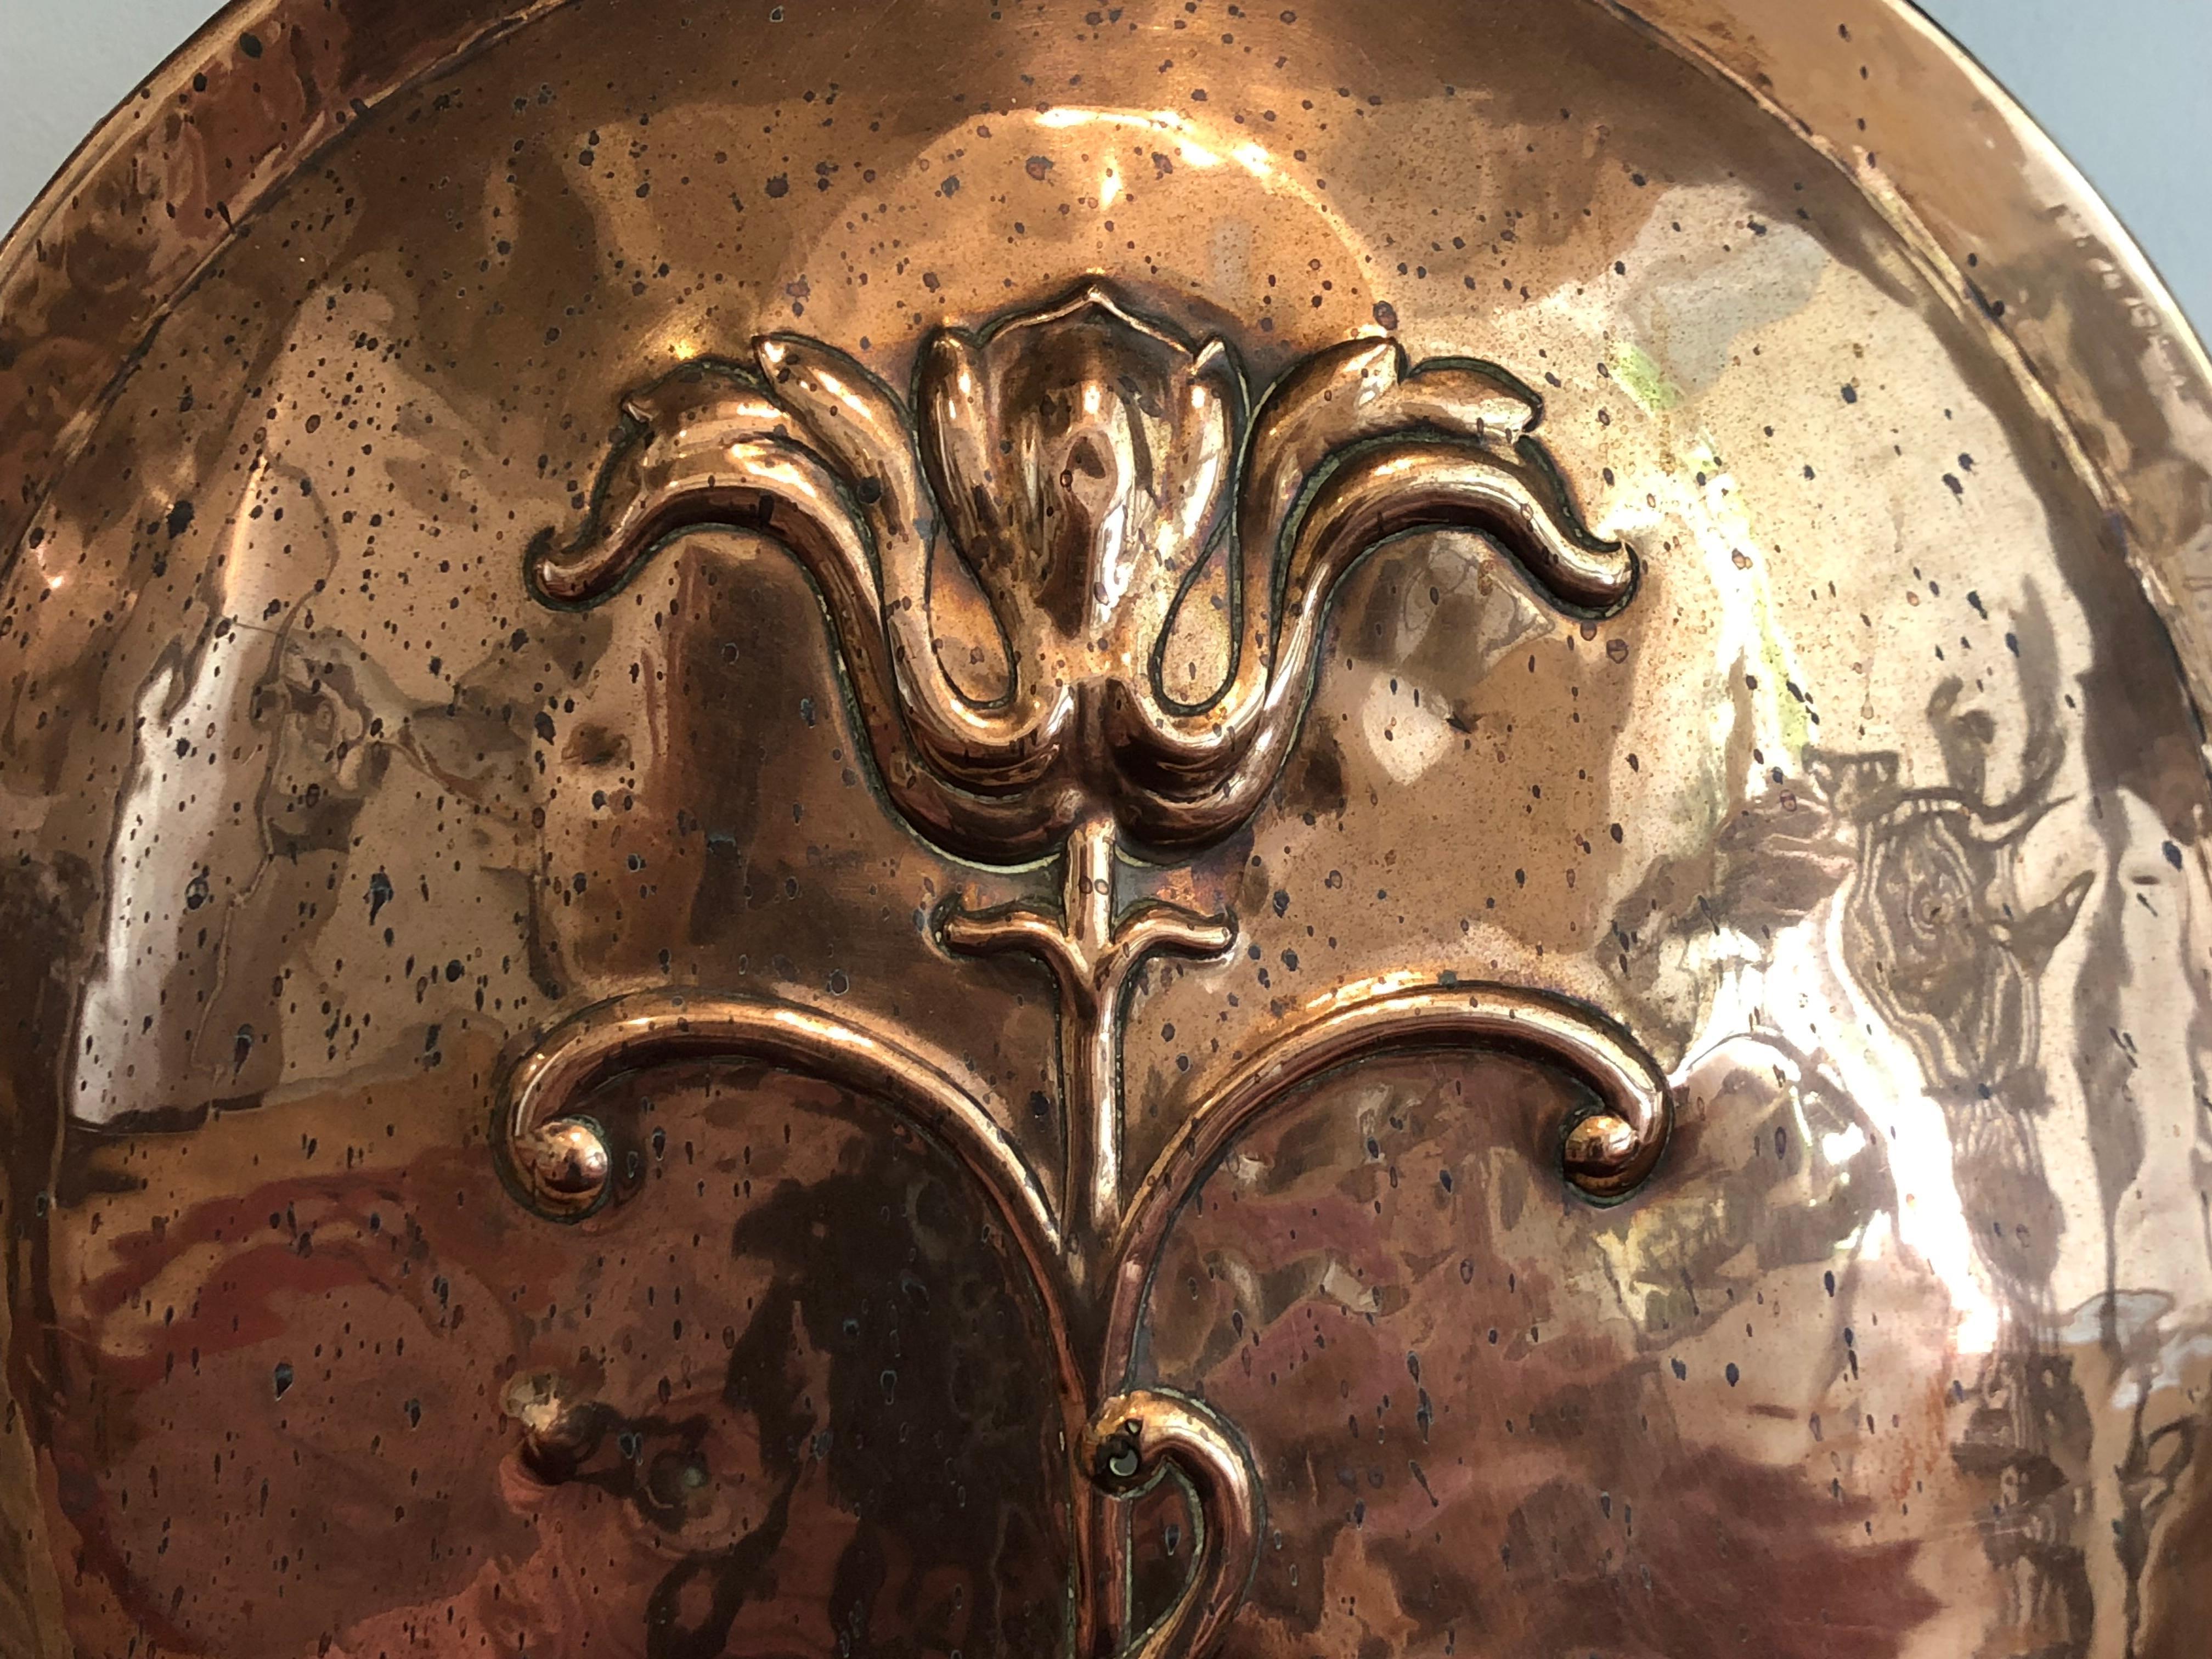 Ein wunderschöner Kupfer-Kaminschirm im klassischen Kunsthandwerksstil. 
Dieser Paravent aus handgeschlagenem Kupfer zeigt ein großes Oval mit einer geprägten, stilisierten Blume, das Ganze umgeben von einem handgeschmiedeten Eisenrahmen.
Anfang des